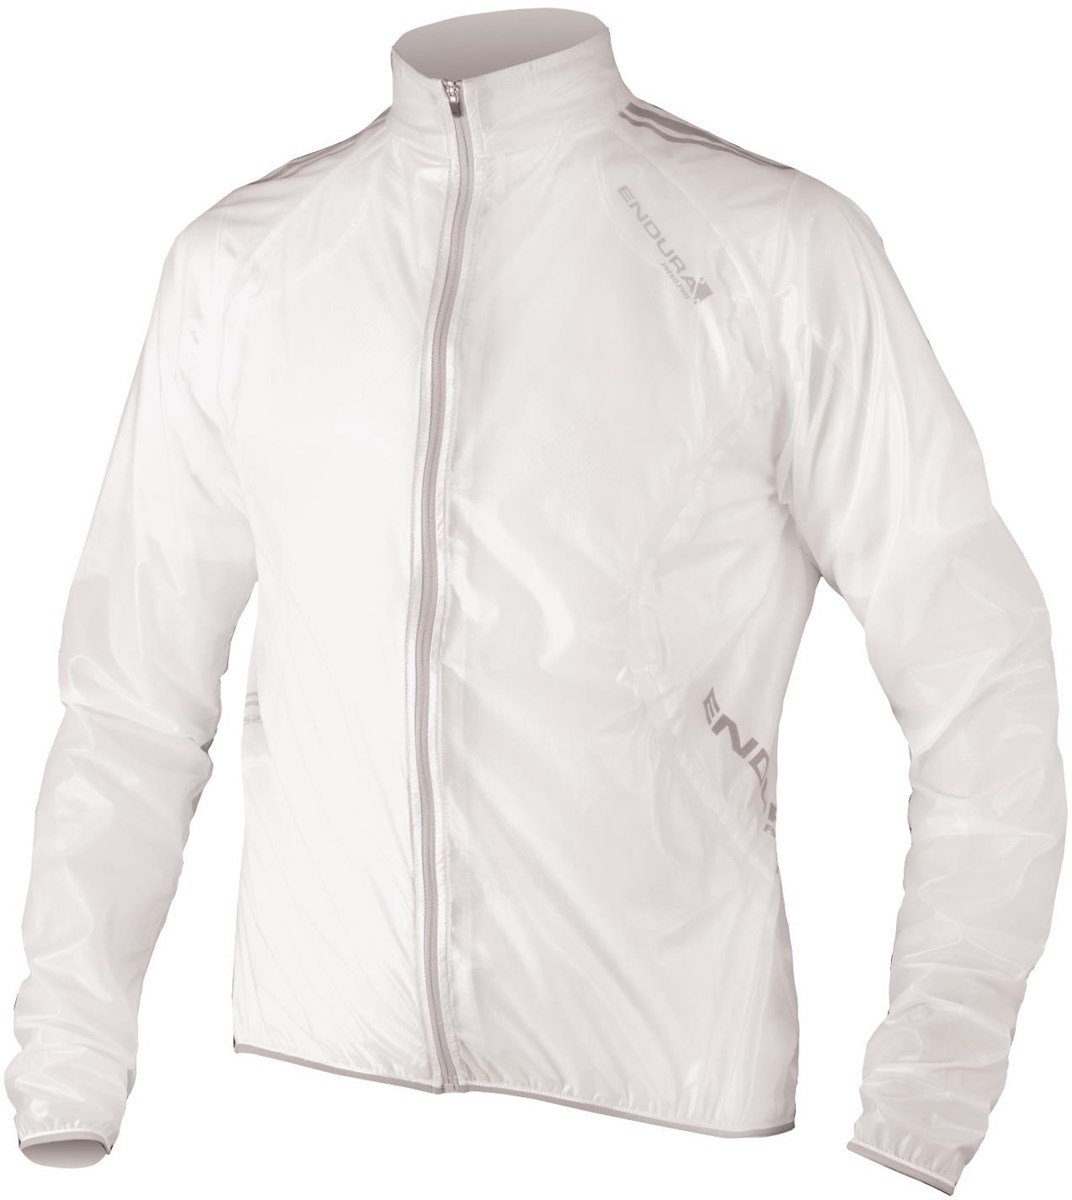 Endura FS260 Pro Adrenaline Race Cape Waterproof Cycling Jacket product image